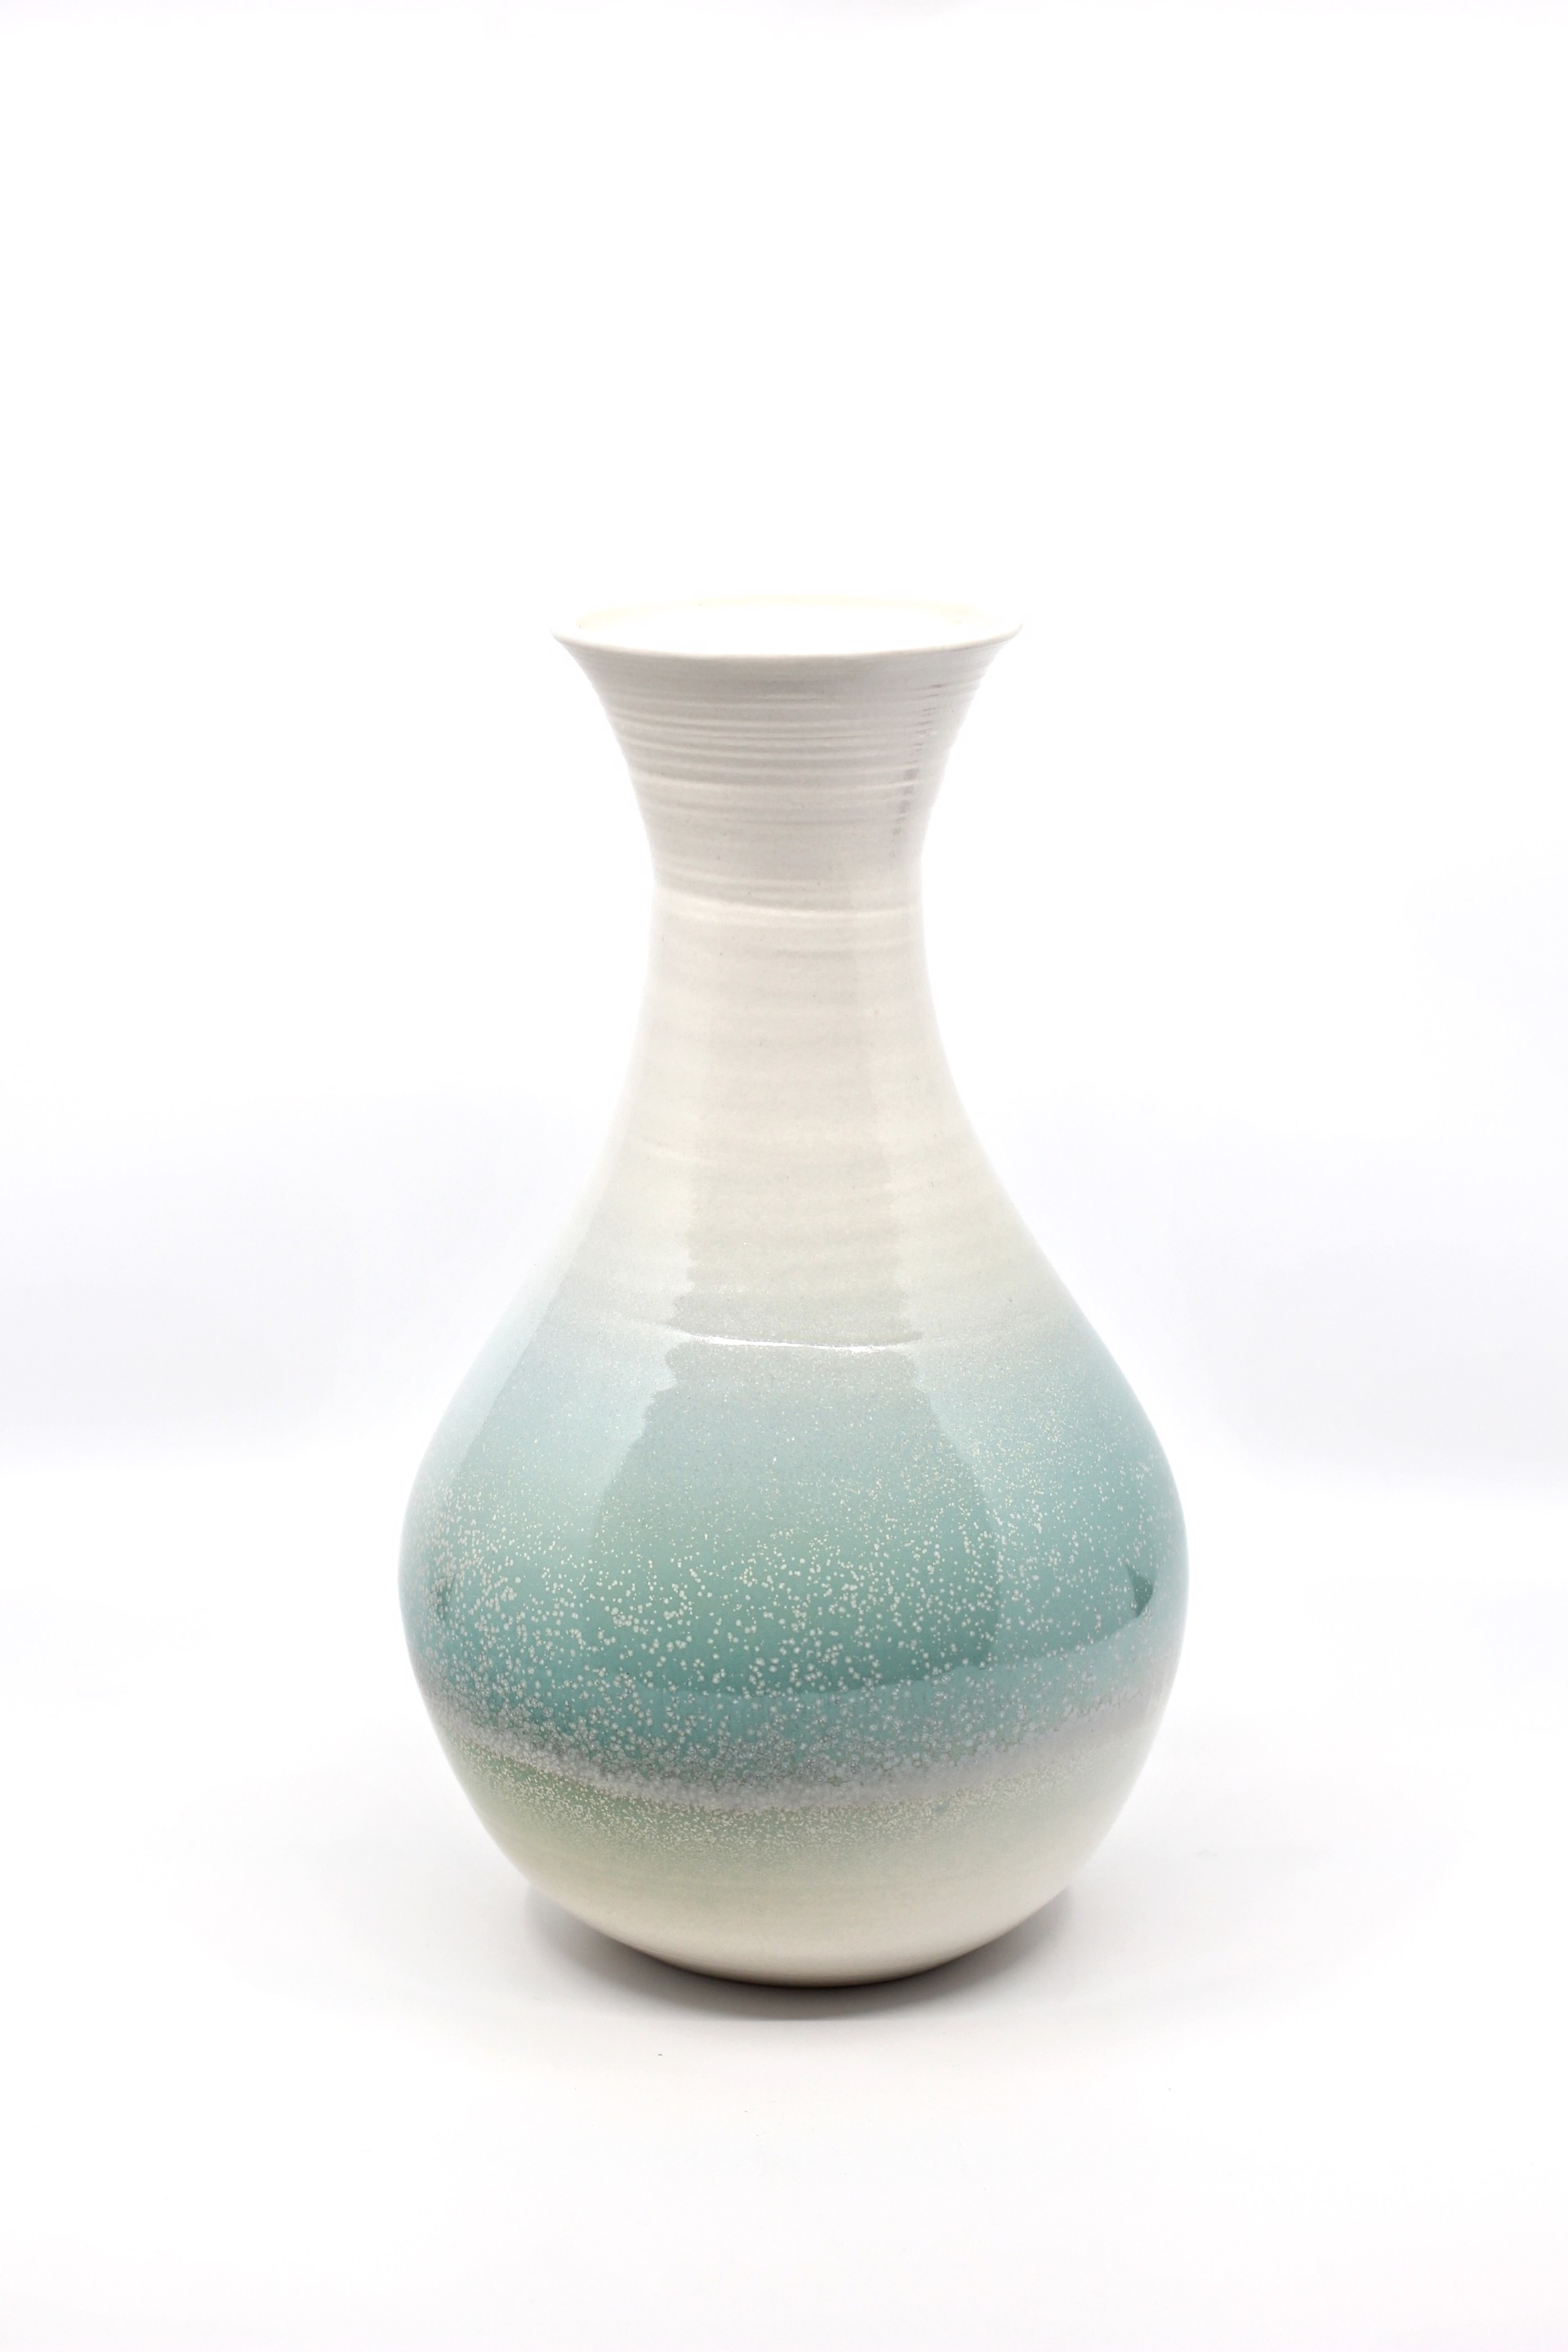 Medium Vase by Heather Bradley